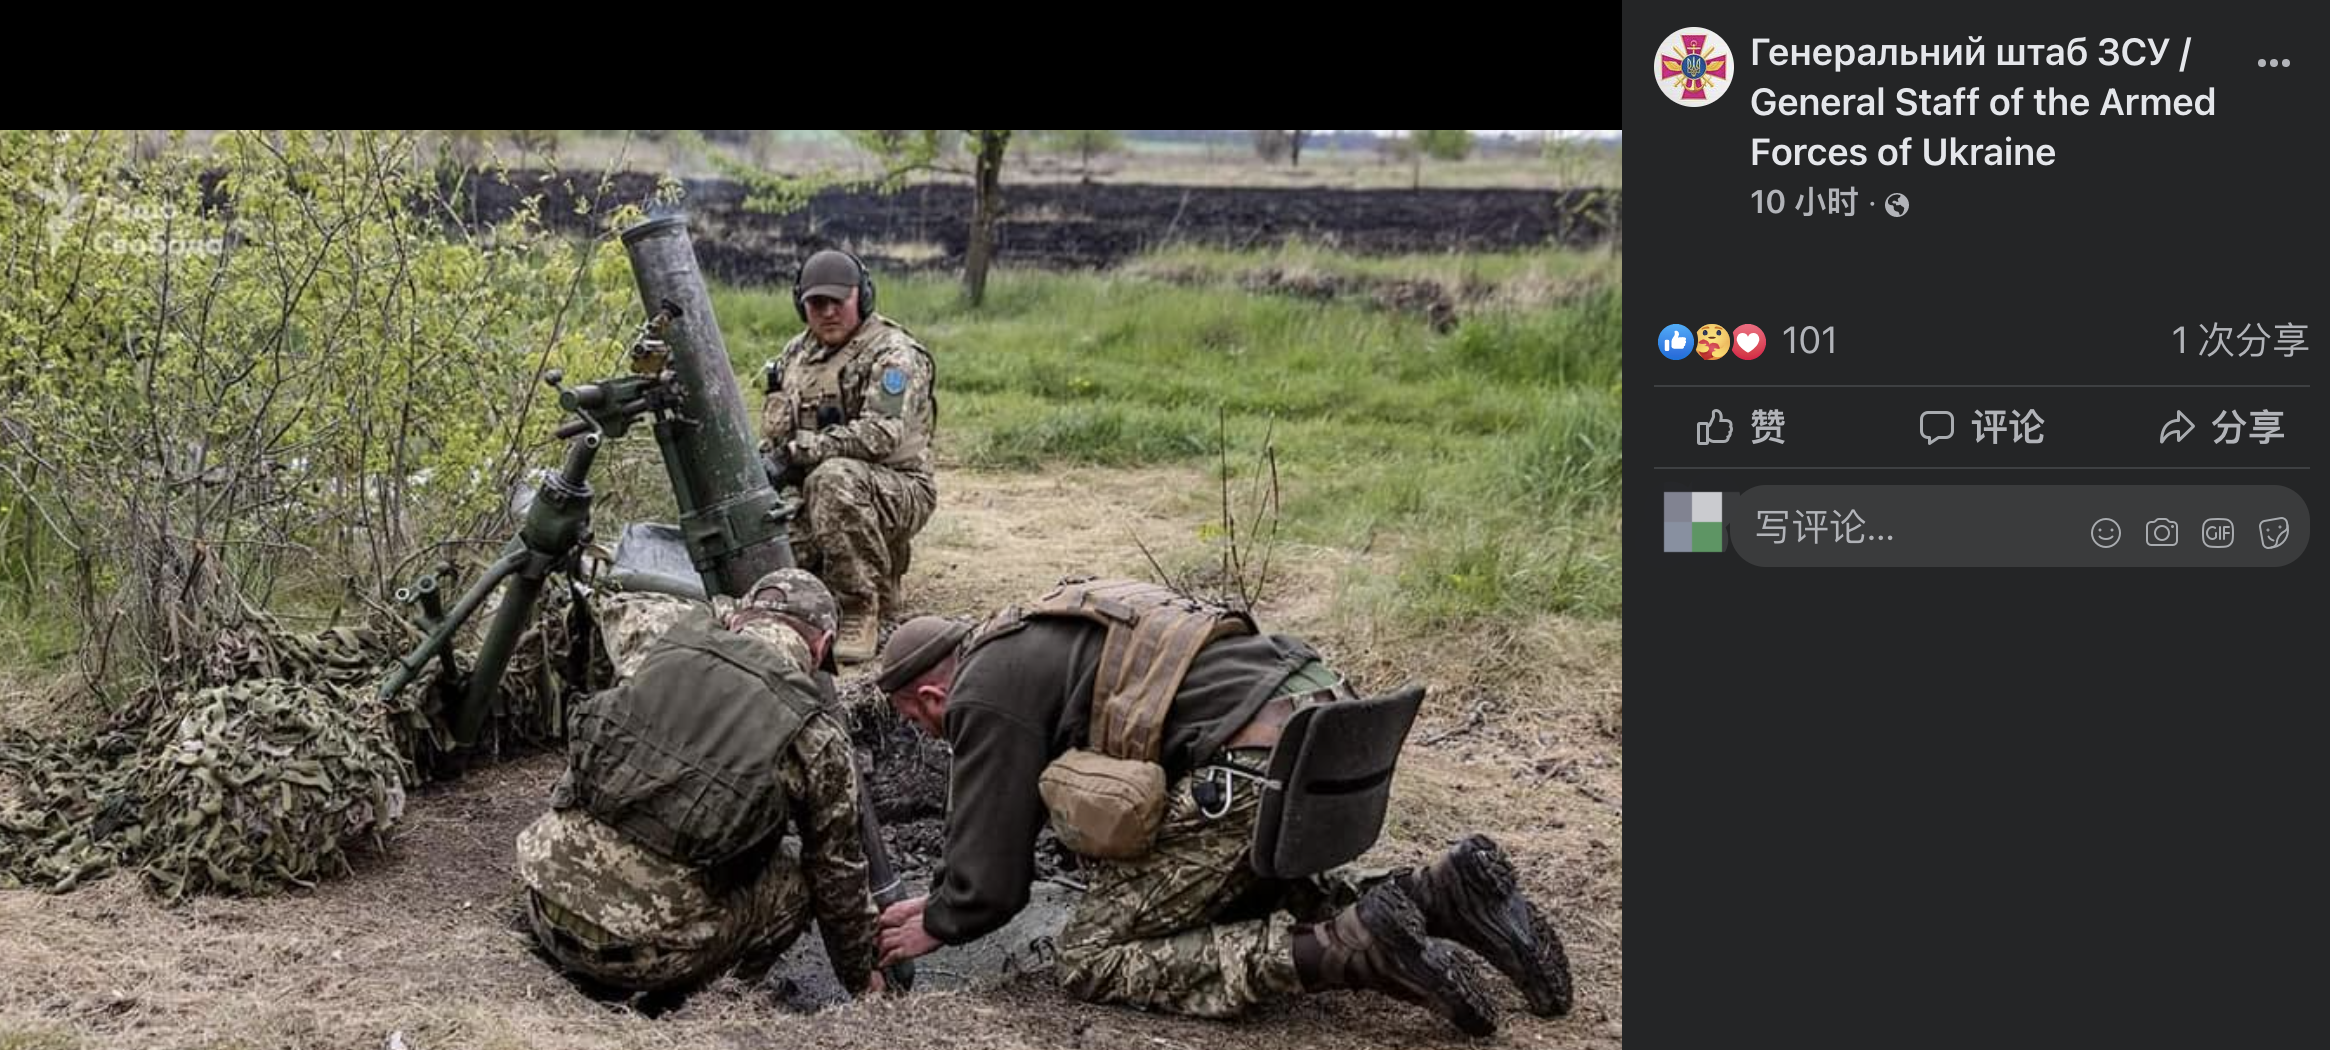 乌军总参10日在美国社交网站脸书上发布的乌第10山地突击旅迫击炮兵执行战斗任务时的照片，这组照片来源被标注为“自由电台”，该组织在俄罗斯活动已于2022年早期被禁